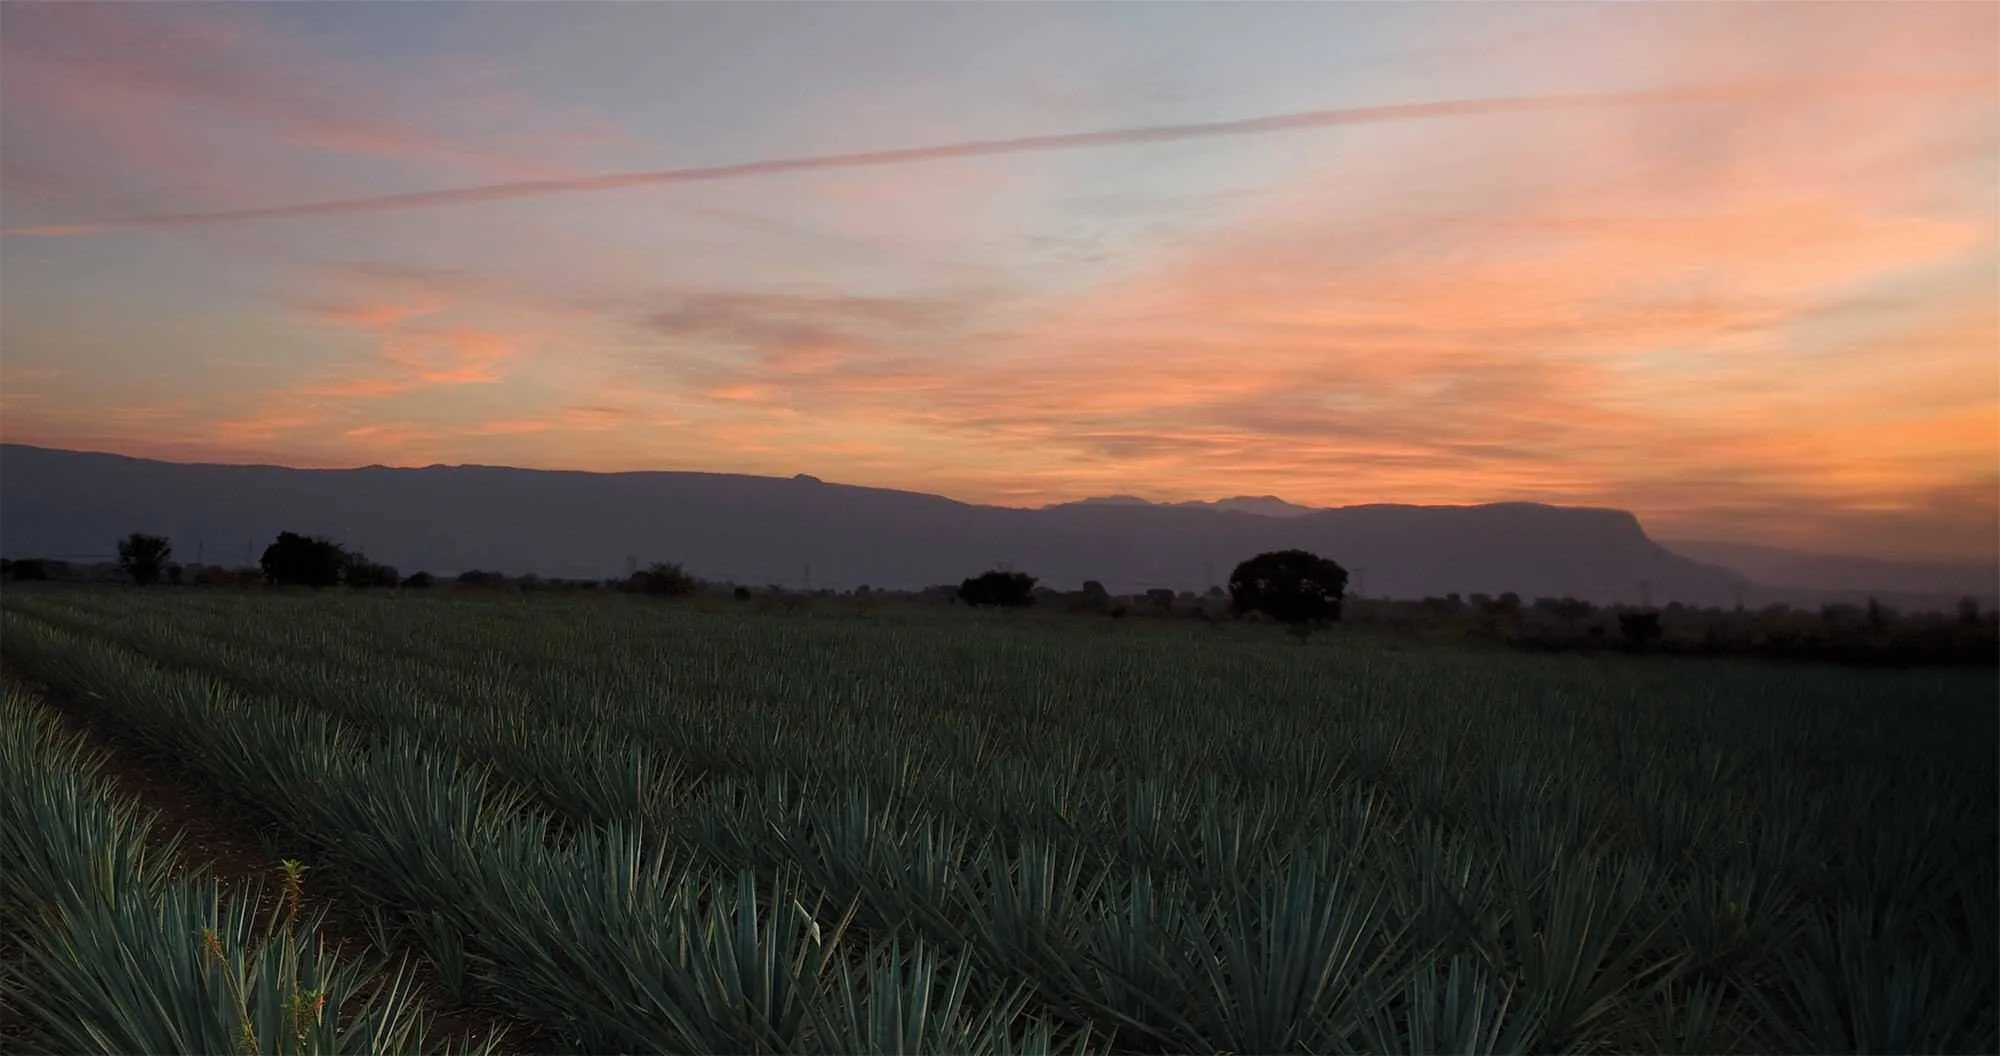 Plantation Tequila Sauza in Mexico